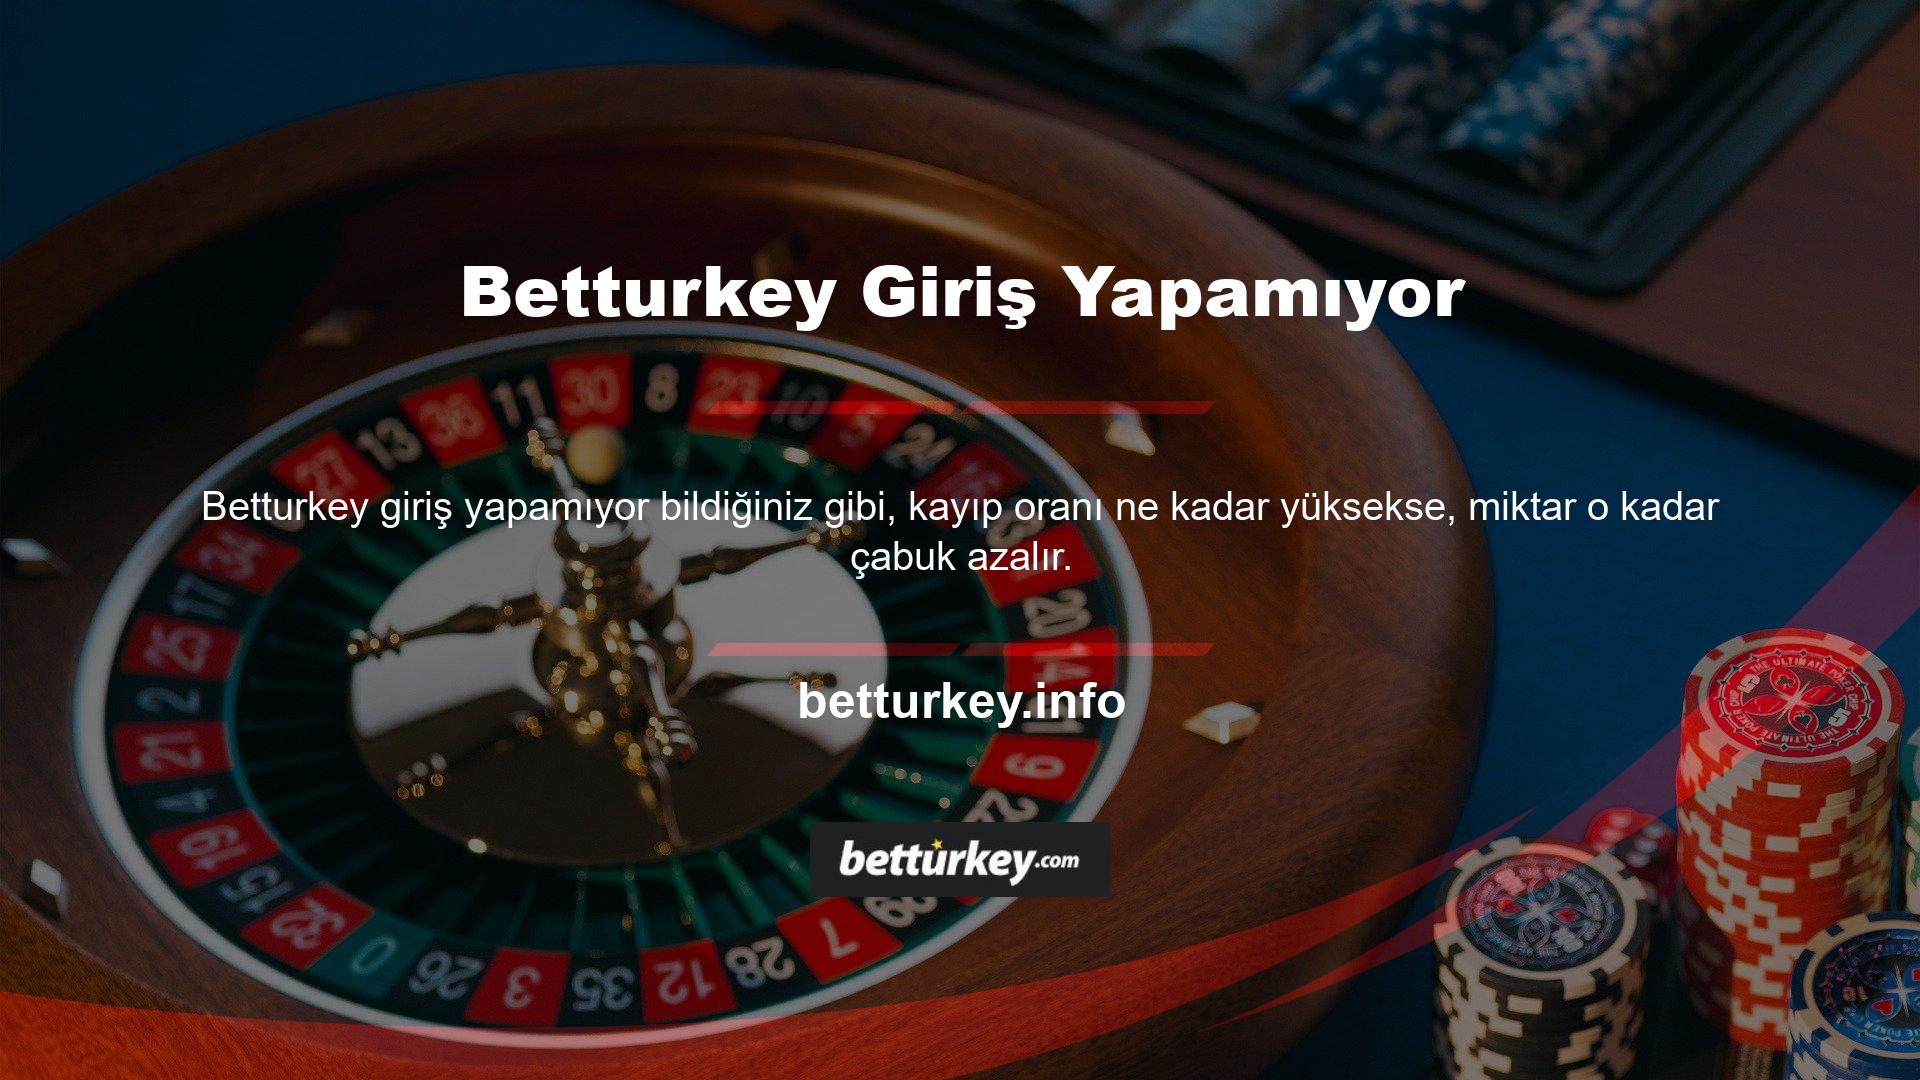 Ücret ve maliyet dışında herhangi bir faydası var mı? Casinonuzu Türkiye'nin en popüler yasal casino siteleri ile kurmak istiyorsanız, sunduğumuz ek bahislerle büyük kazançlar elde edebilirsiniz